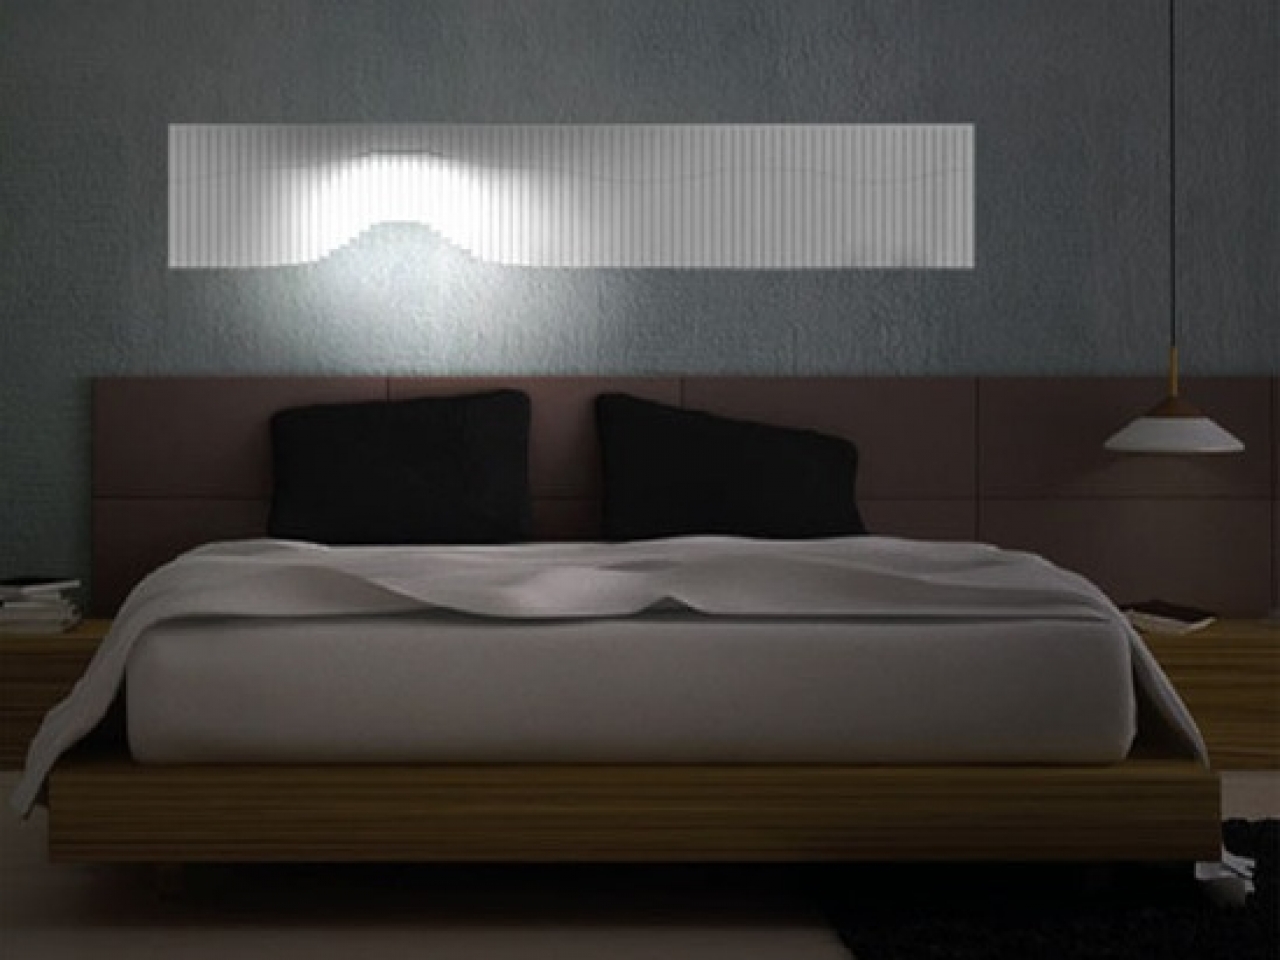 светильники встроенные в изголовье кровати